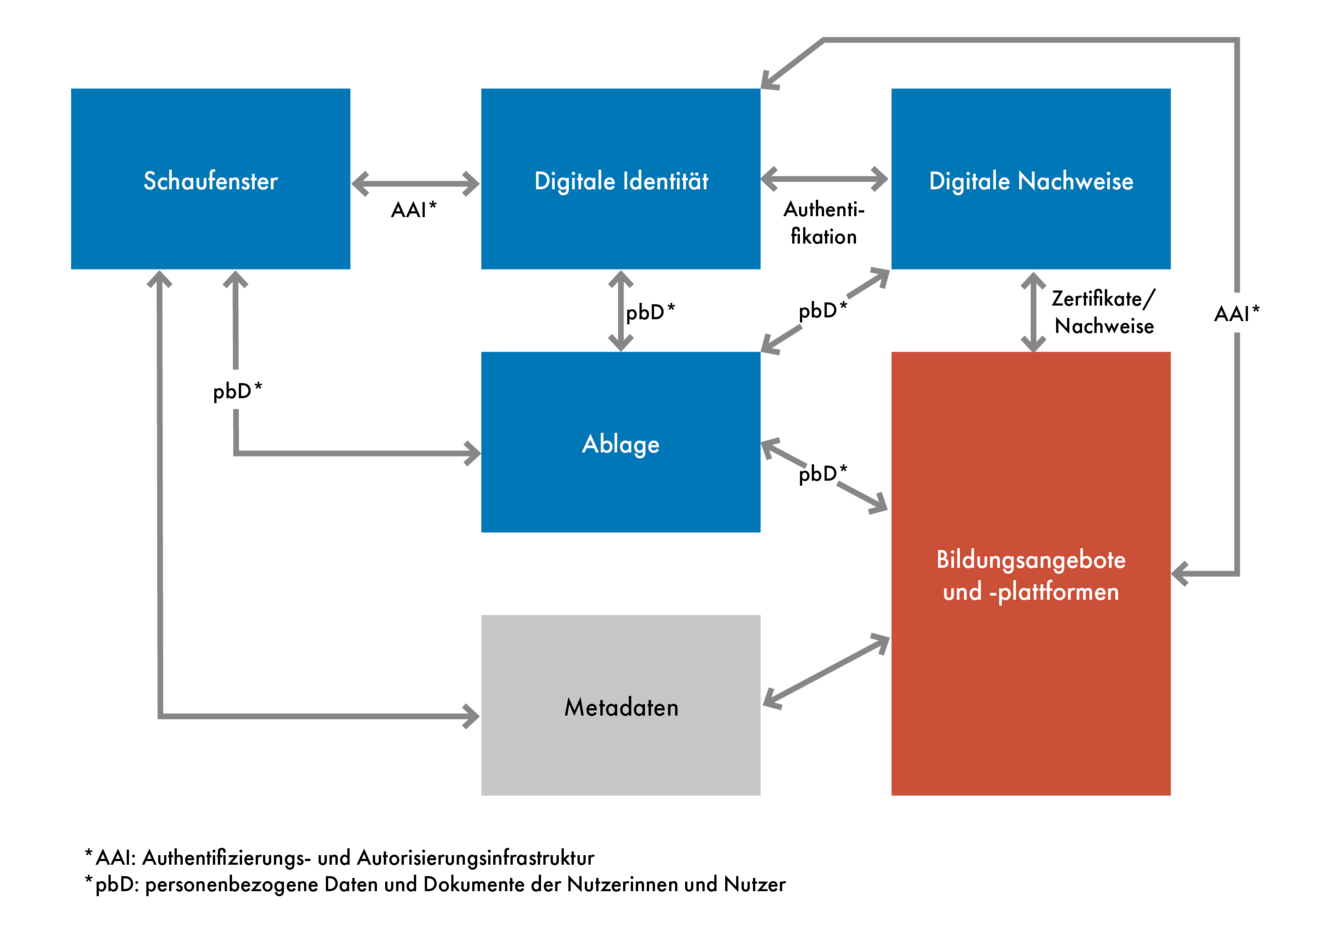  Die Grafik veranschaulicht die fünf Komponenten von "Mein Bildungsraum": Digitale Identitäten, Ablage, Digitale Nachweise, Datenraum und Schaufenster.